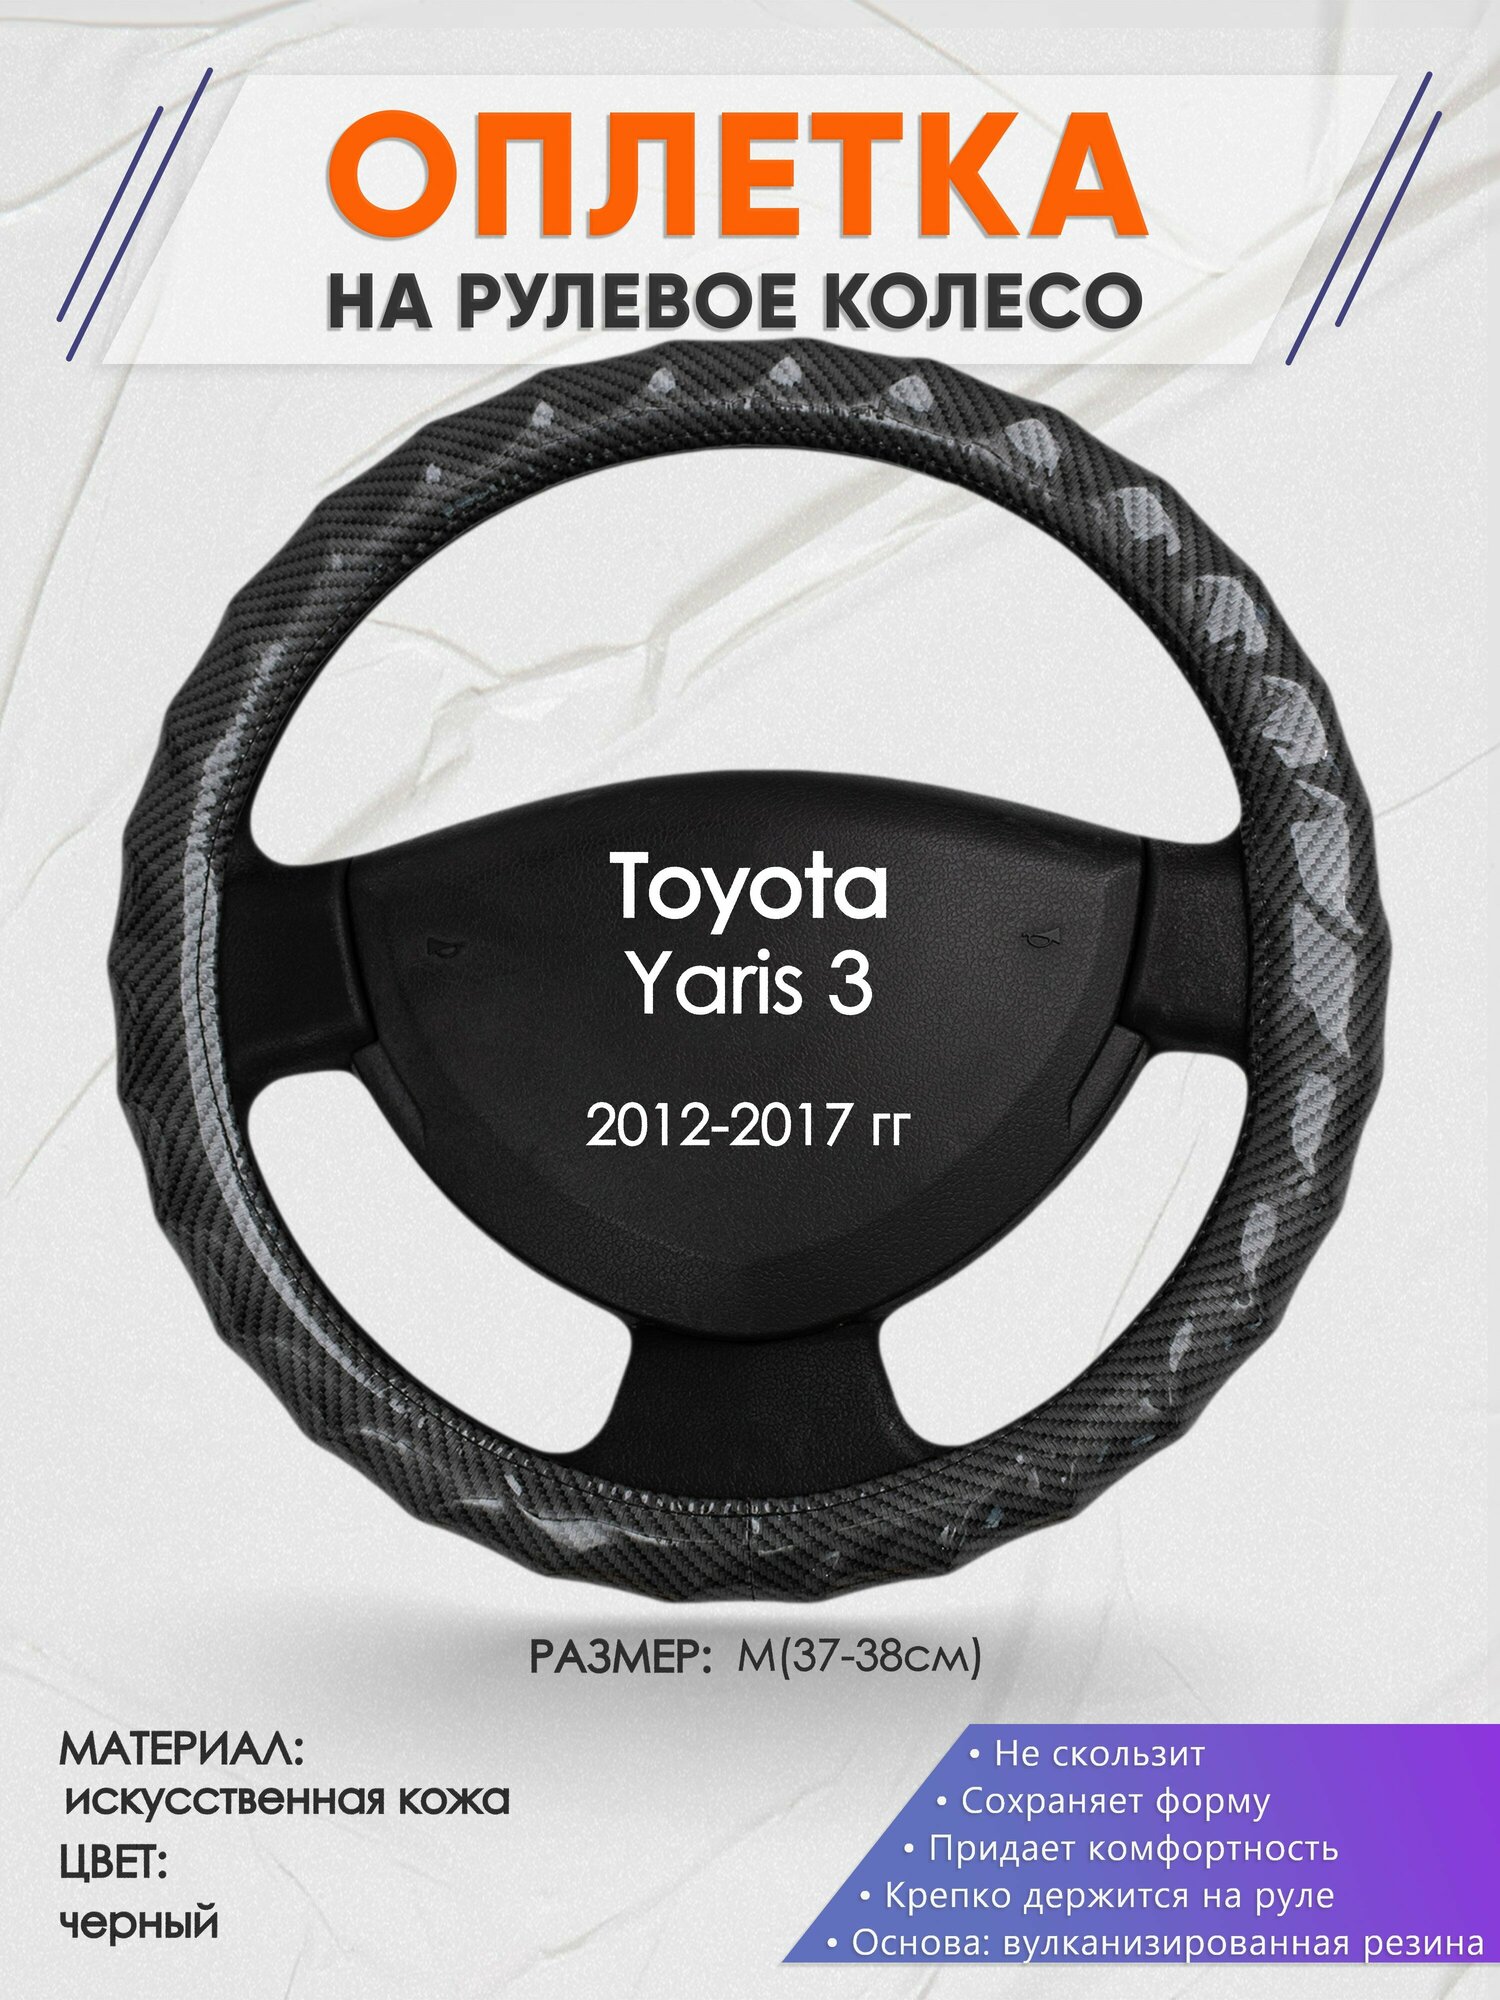 Оплетка на руль для Toyota Yaris 3(Тойота Ярис 3) 2012-2017, M(37-38см), Искусственная кожа 15